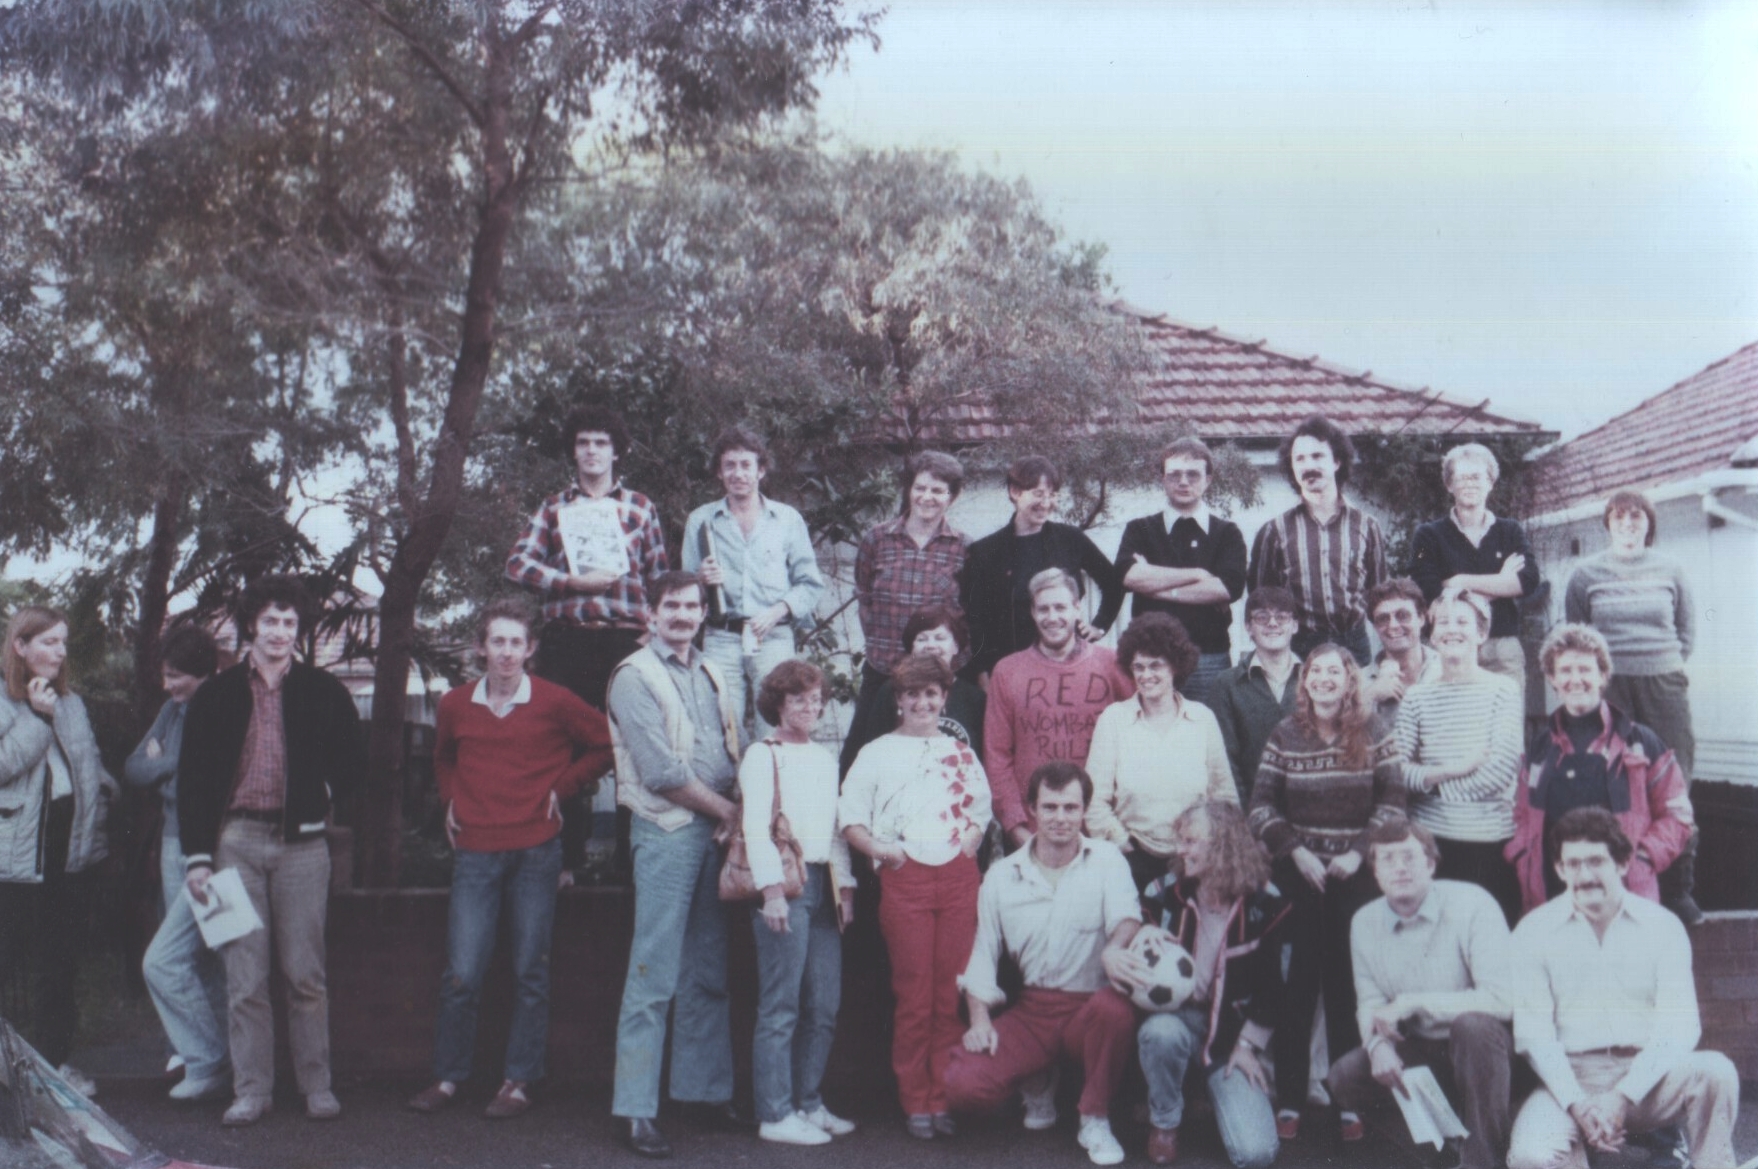 Socialist Action founders, Balmain, Sydney 1985